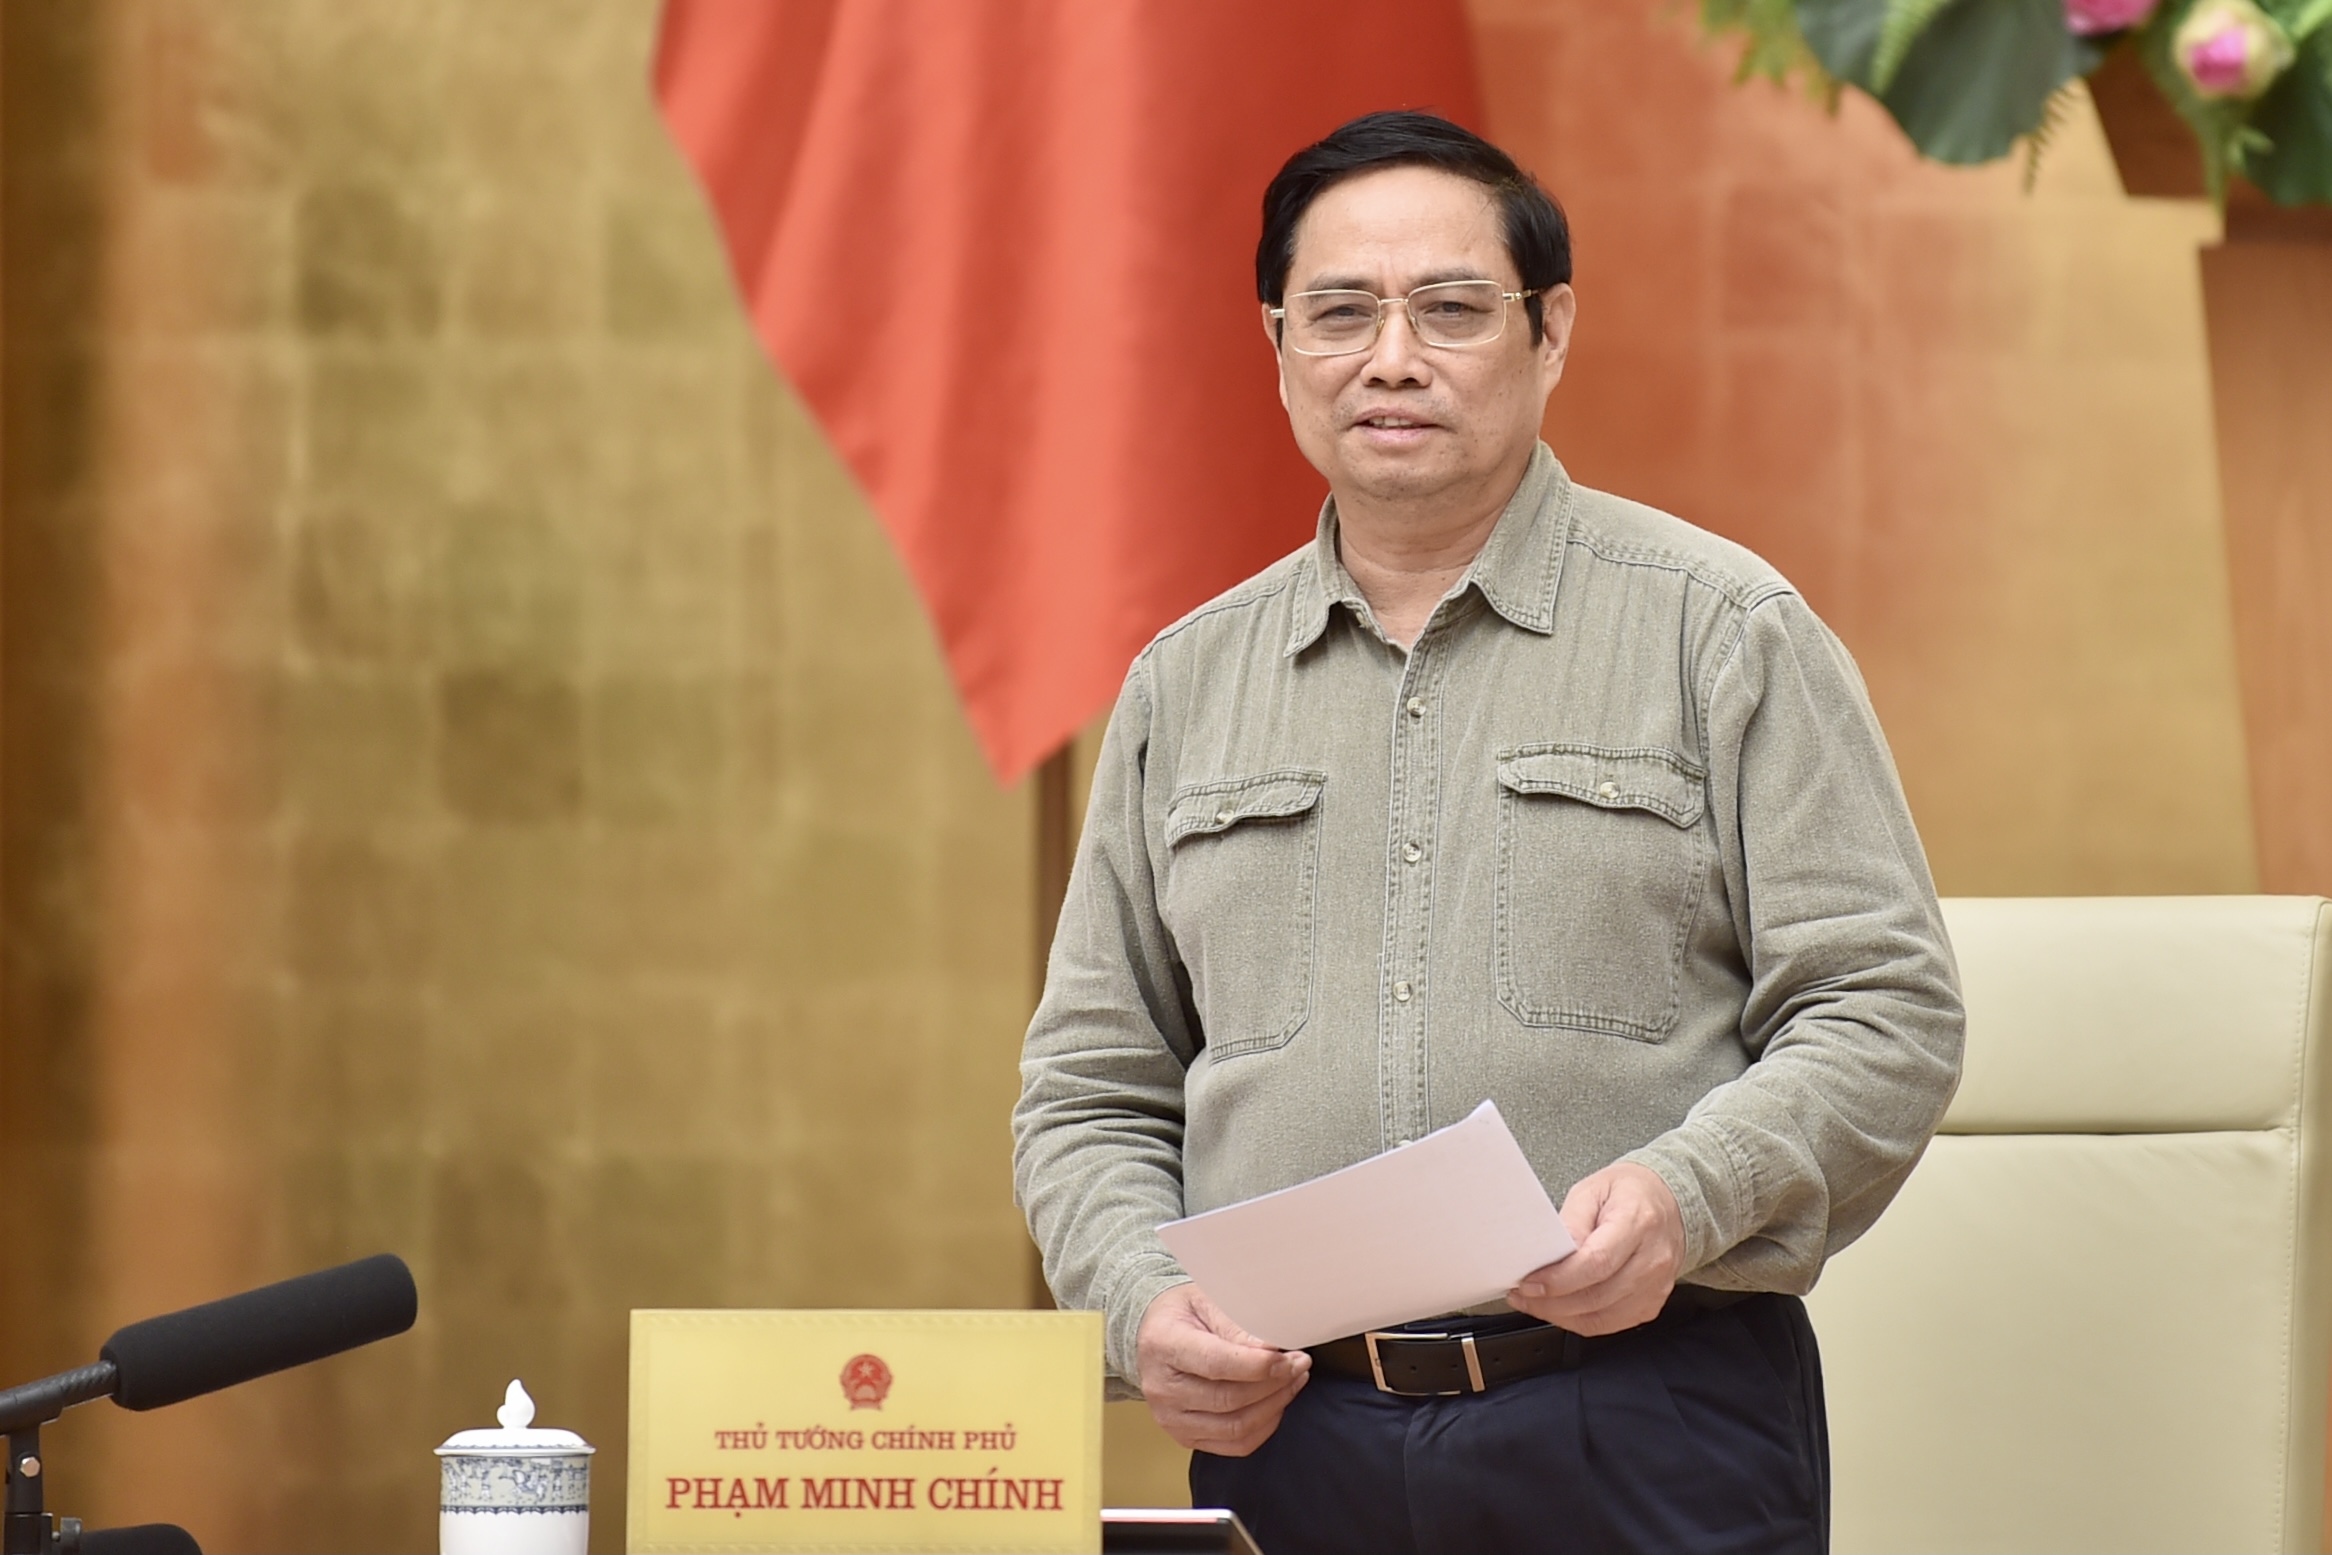 Thủ tướng Chính phủ Phạm Minh Chính, Trưởng Ban Chỉ đạo quốc gia phòng chống COVID-19 chủ trì cuộc họp trực tuyến toàn quốc của Ban Chỉ đạo với các địa phương